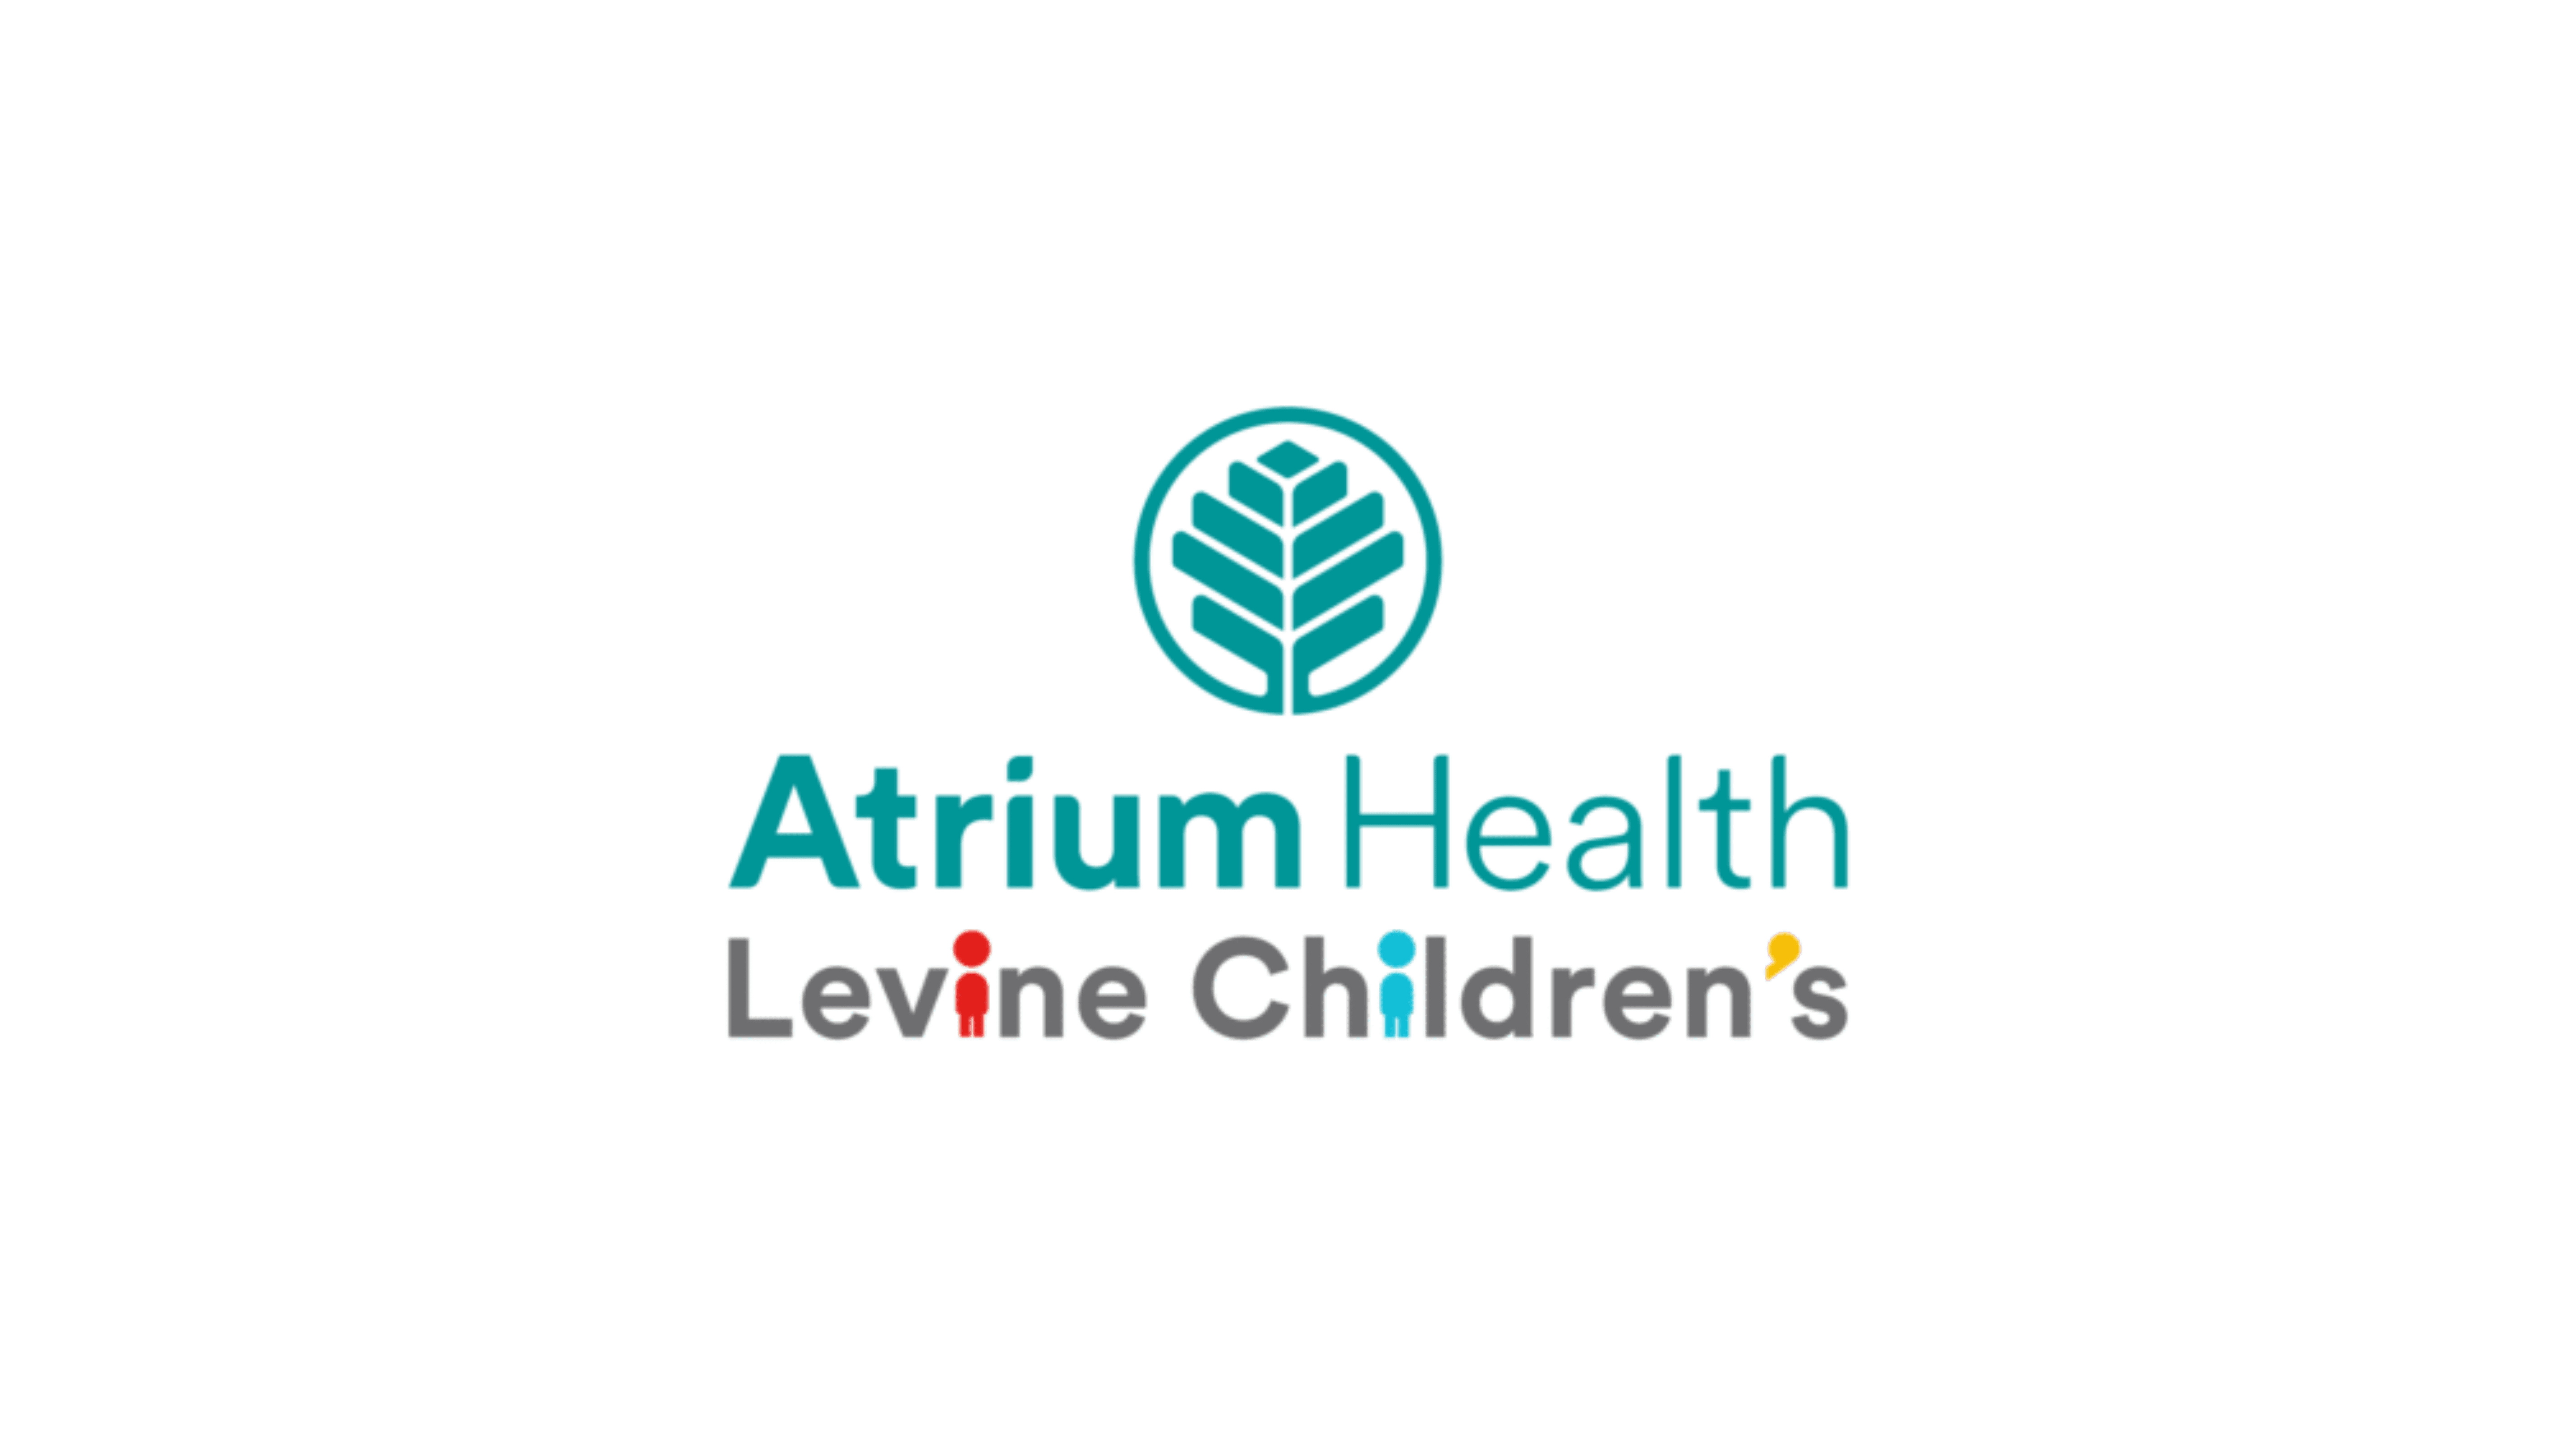 atrium health levine childrens